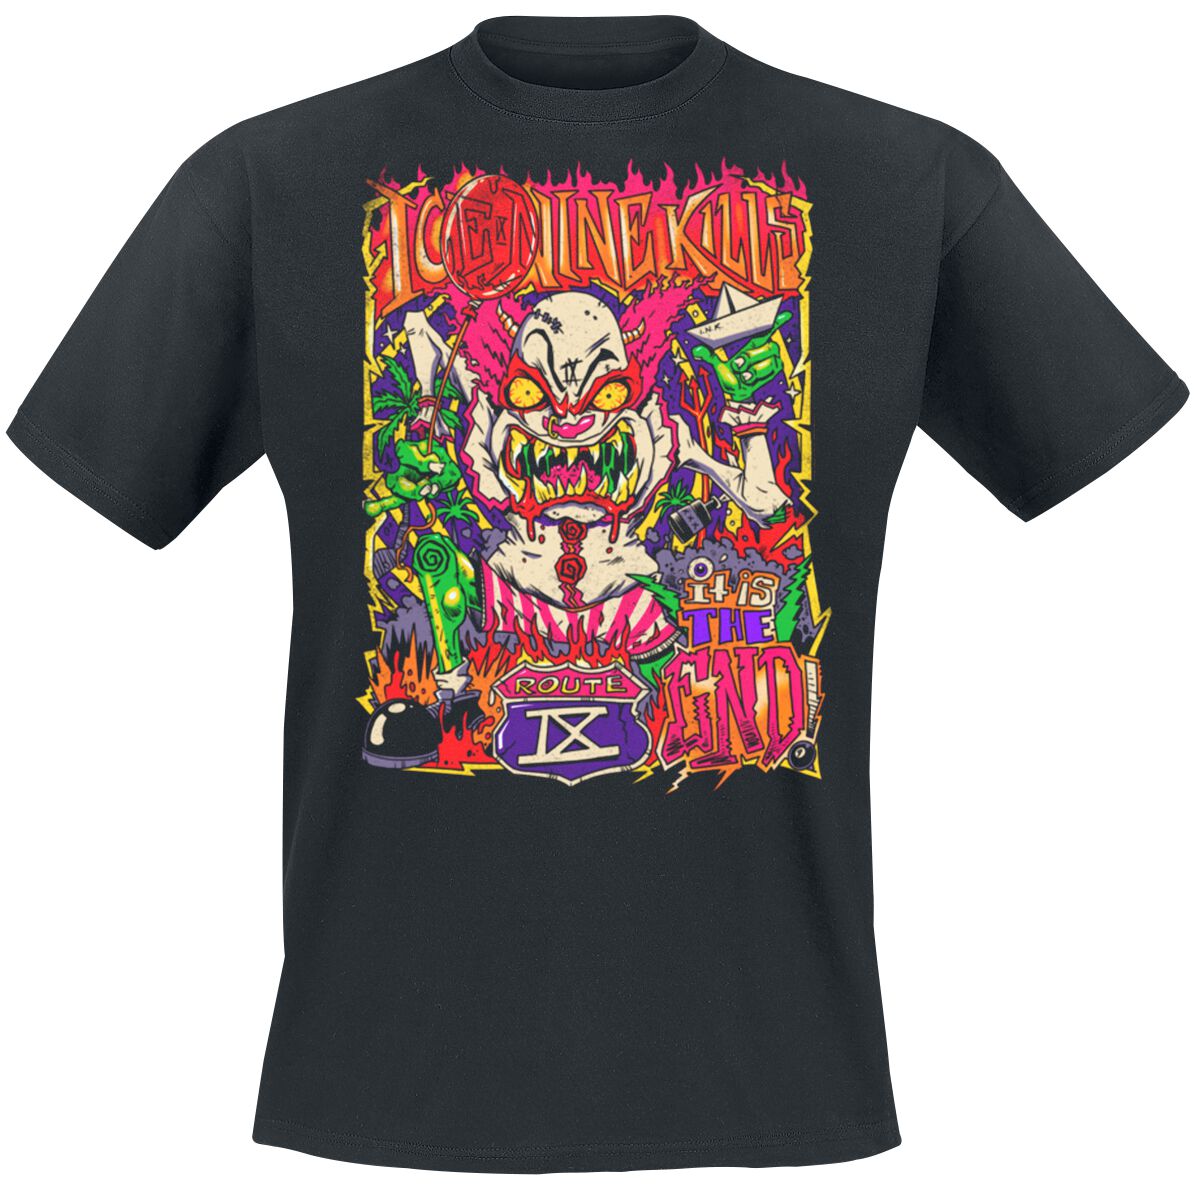 Ice Nine Kills T-Shirt - Clown Zombie - S bis 4XL - für Männer - Größe 3XL - schwarz  - Lizenziertes Merchandise!